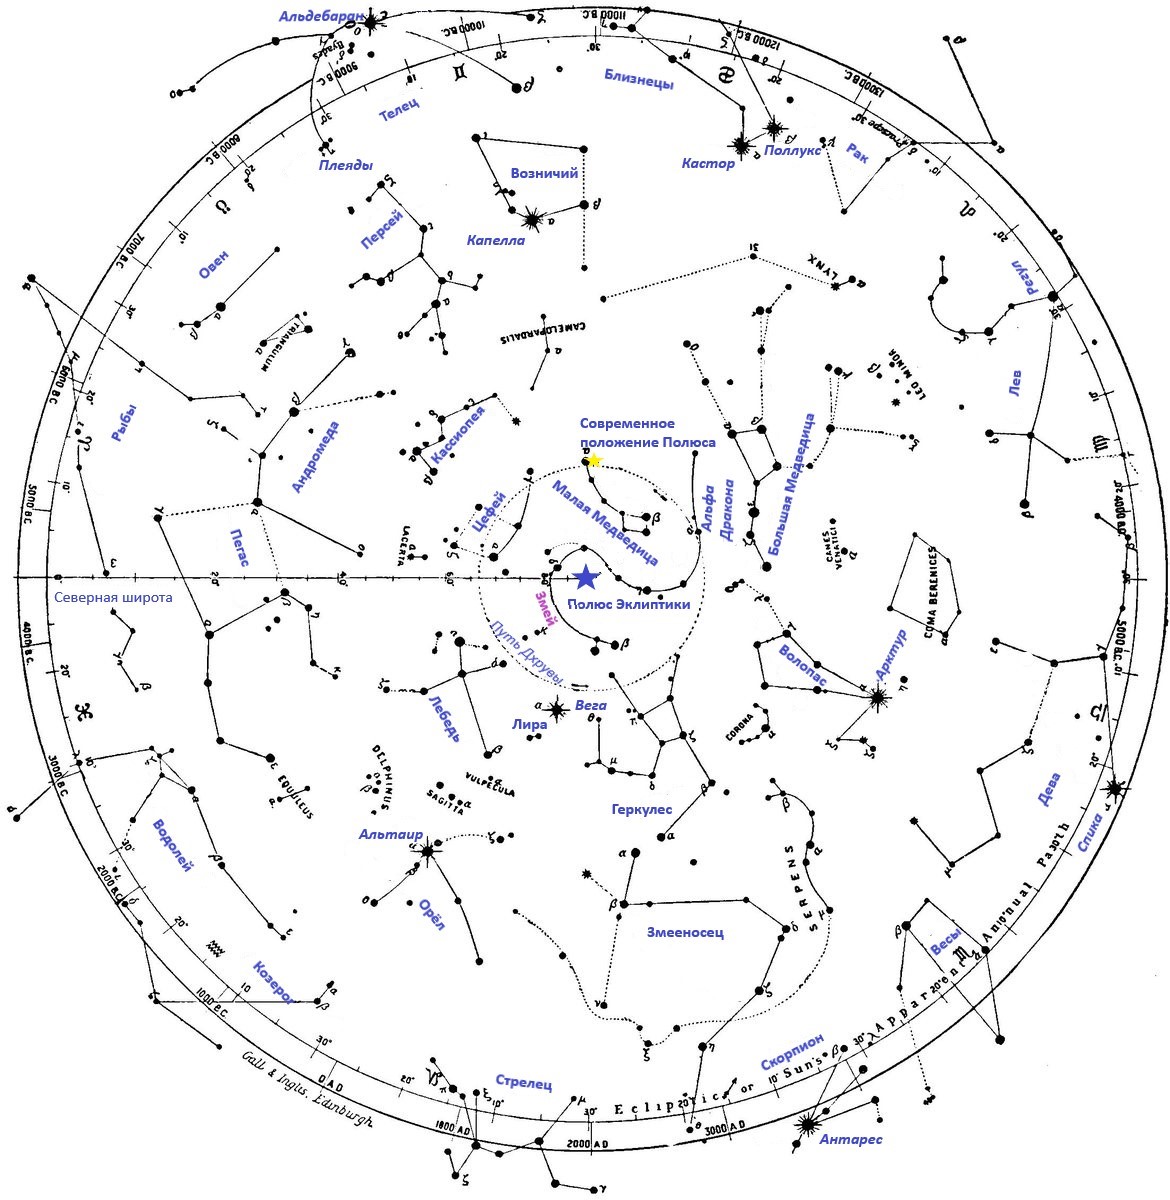 Рисунок 6.2. Проекция созвездий северного полушария Небесной Сферы на плоскость эклиптики. Синей звездой отмечено положение полюса эклиптики в центре созвездия Змея (Дракона), совпадавшего некогда с полюсом Земли. Также на рисунке отмечены некоторые созвездия и звёзды.